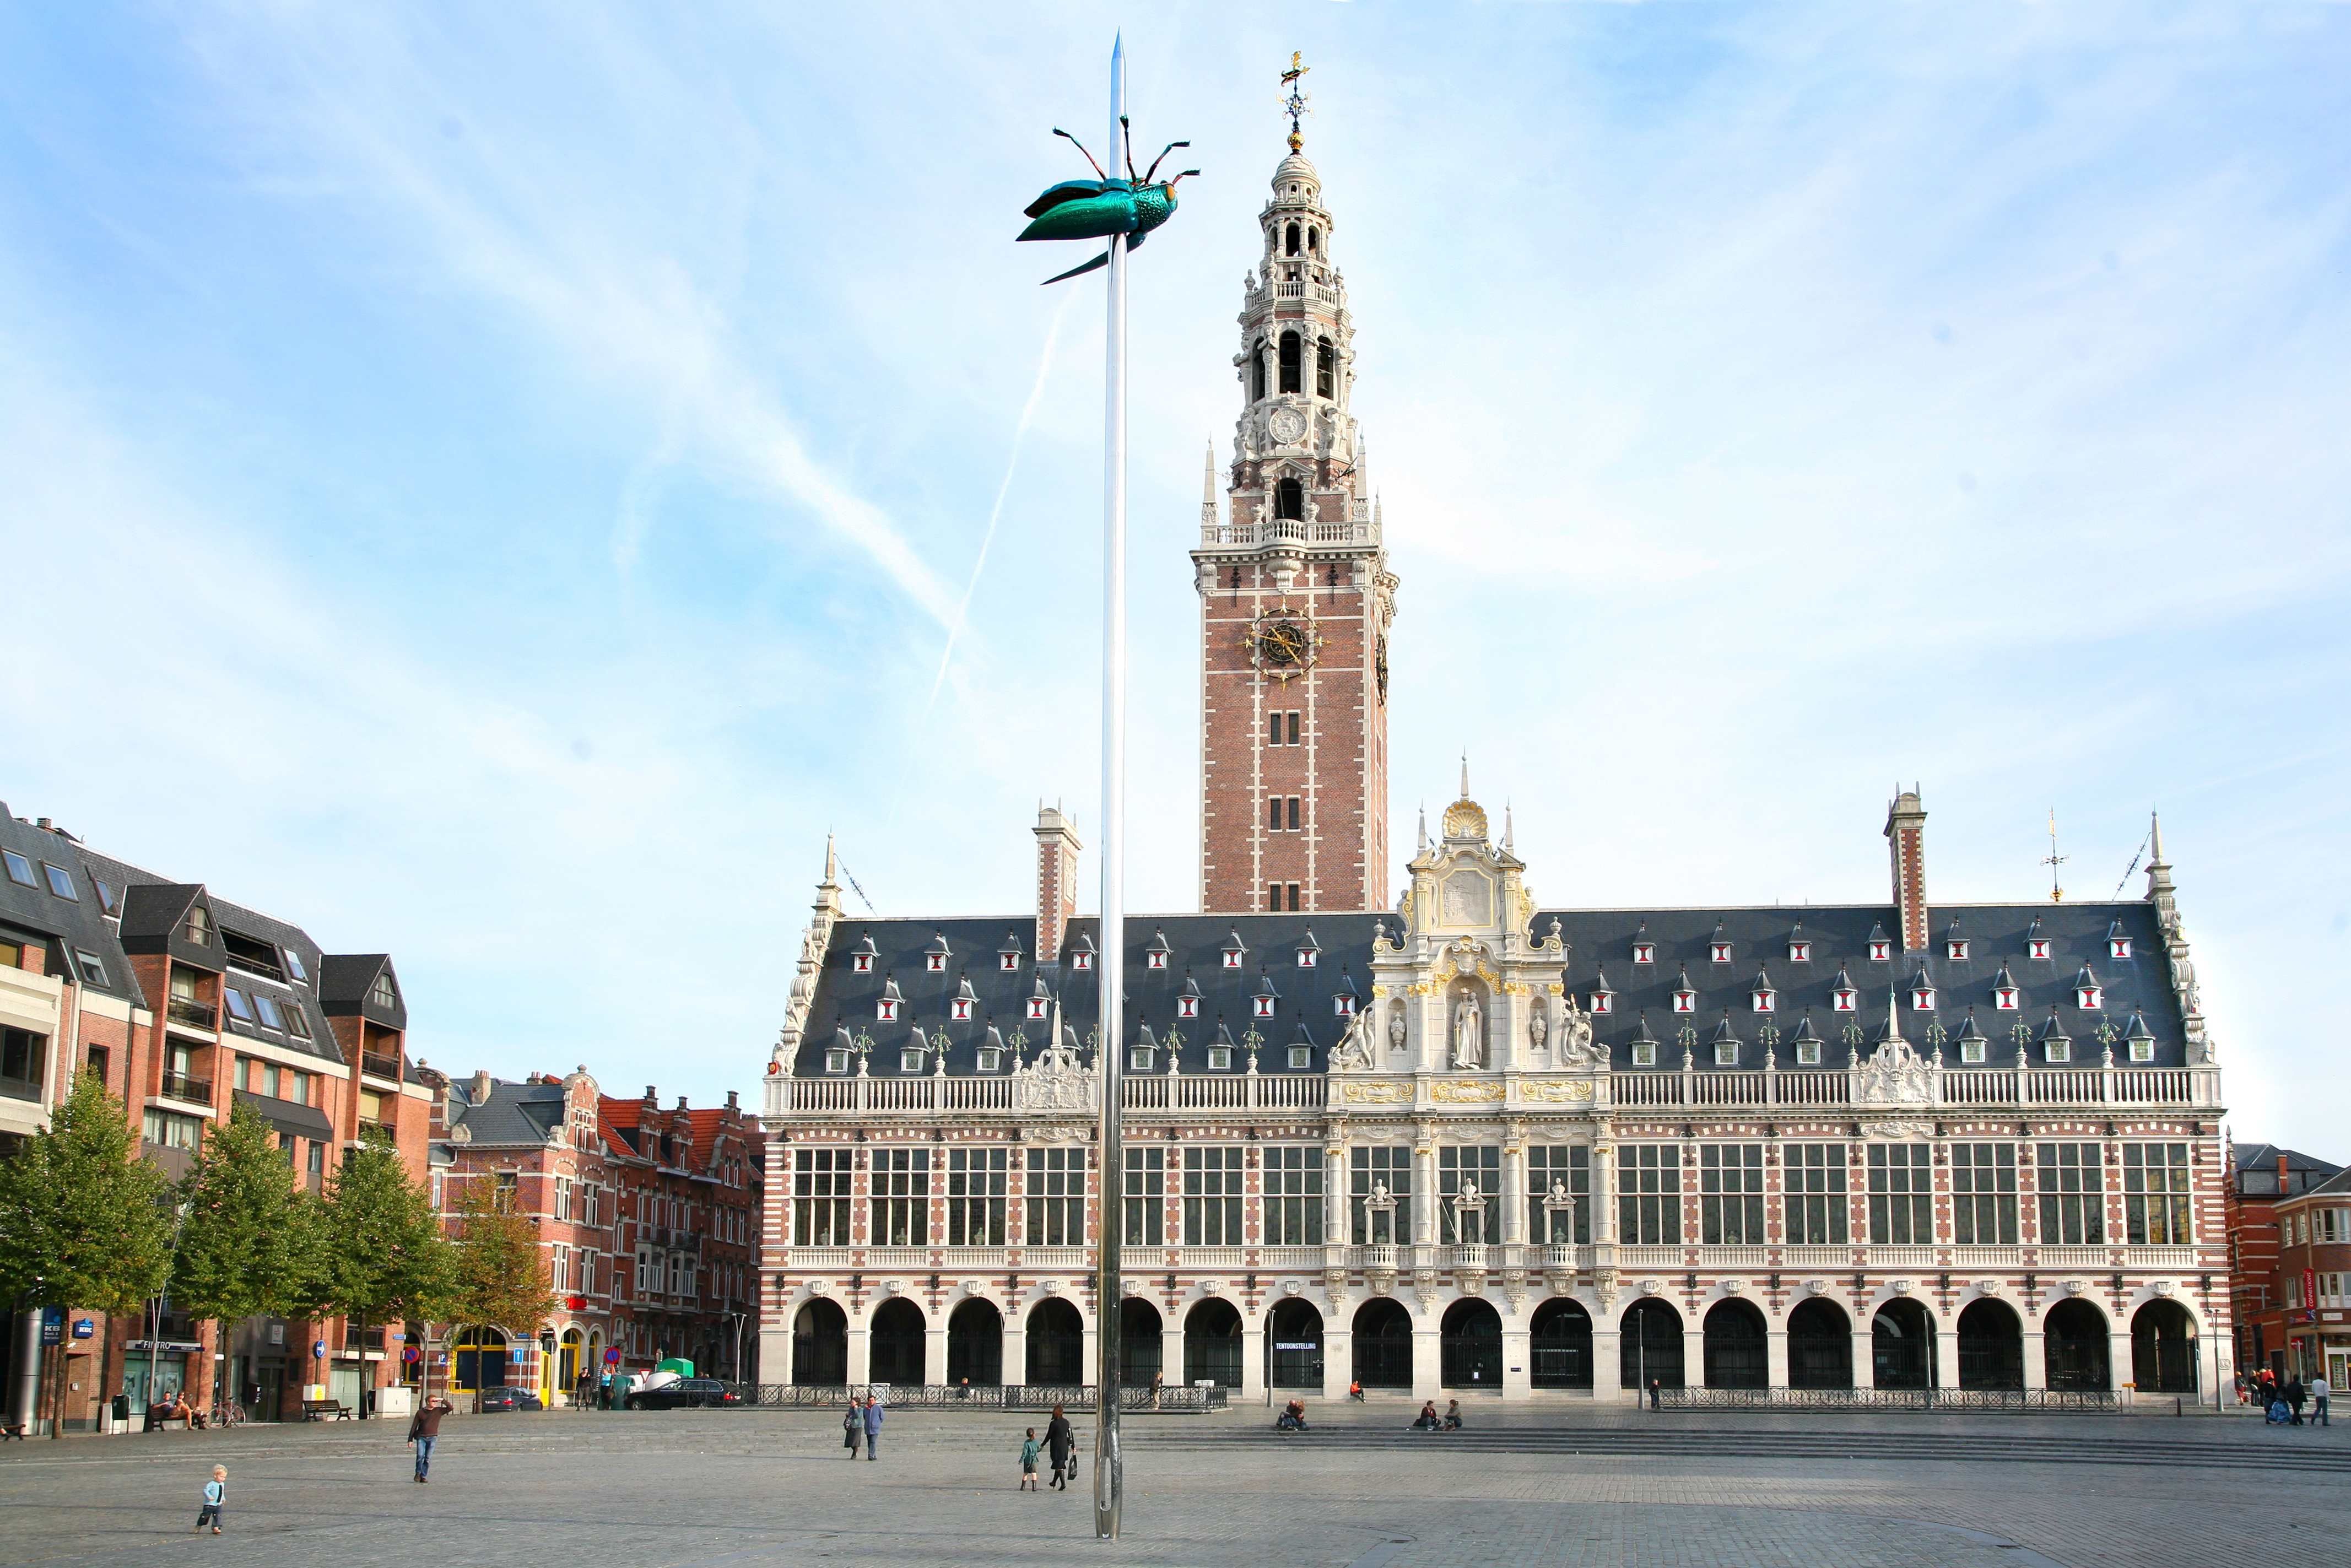 جامعة لوفان تعتبر الجامعة الرائدة في بلجيكا لما يقارب ستة عقود ويفوق عدد طلابها 30 ألفا.  (مواقع التواصل الاجتماعي)